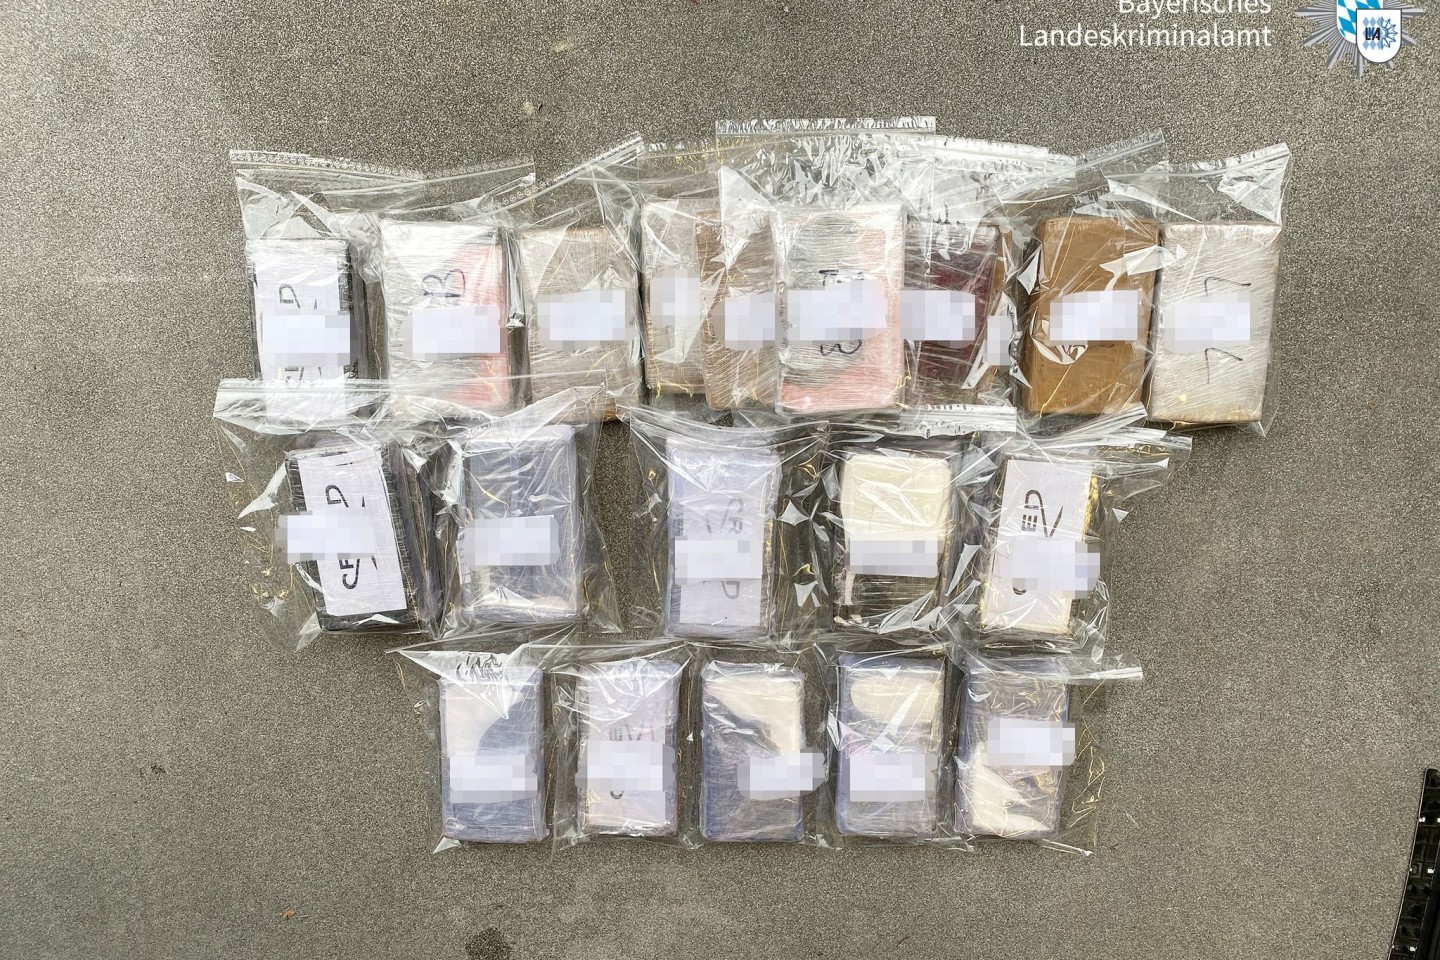 Das von der Polizei in Bayern sichergestellte Kokain hat einen Wert von etwa 2,7 Millionen Euro.